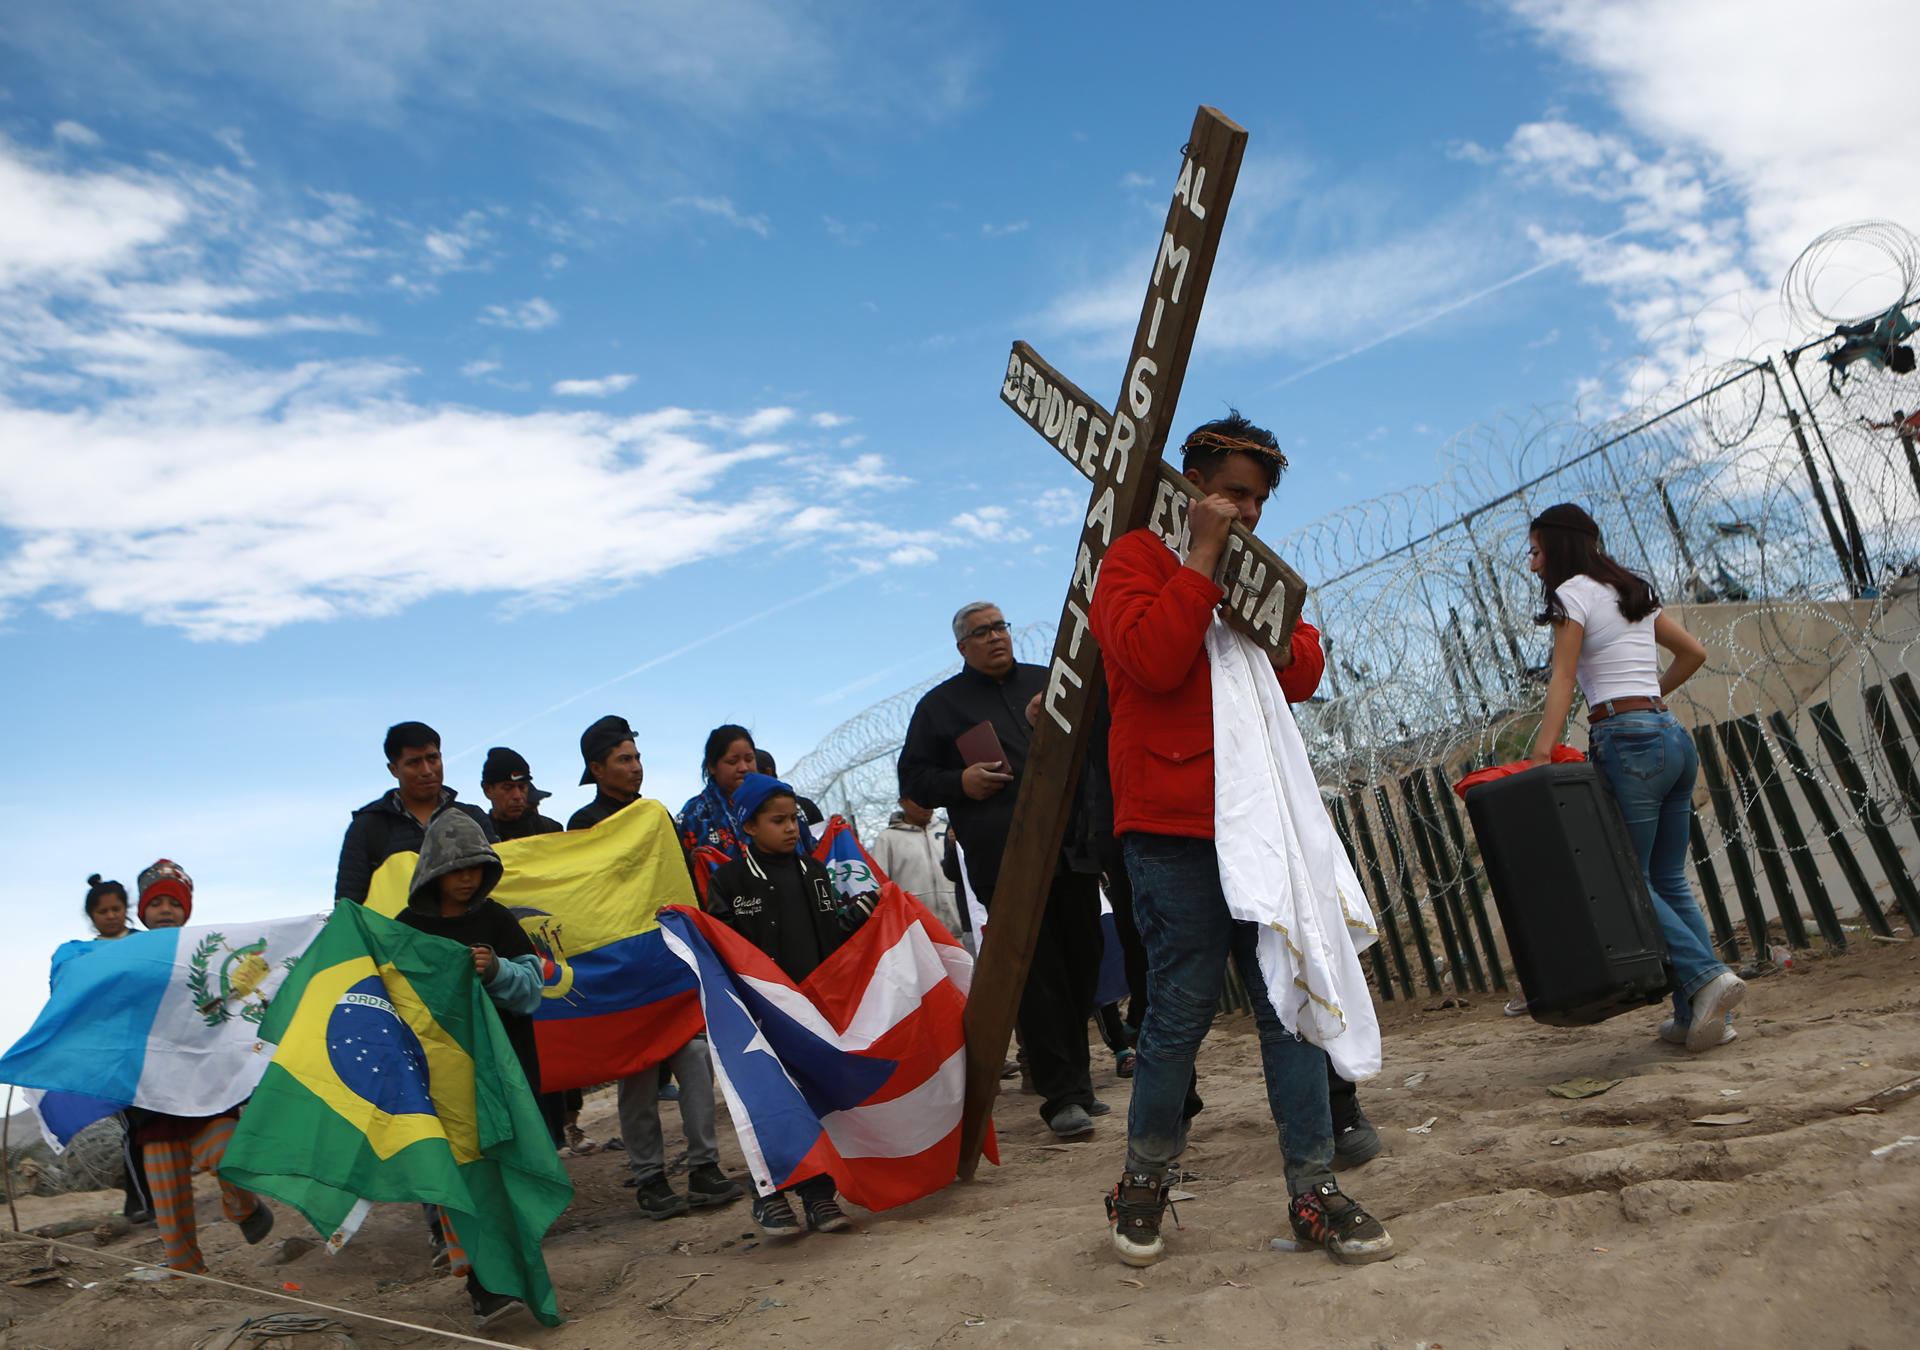 El viacrucis de migrantes en México, semana santa  en Venezuela y Haití